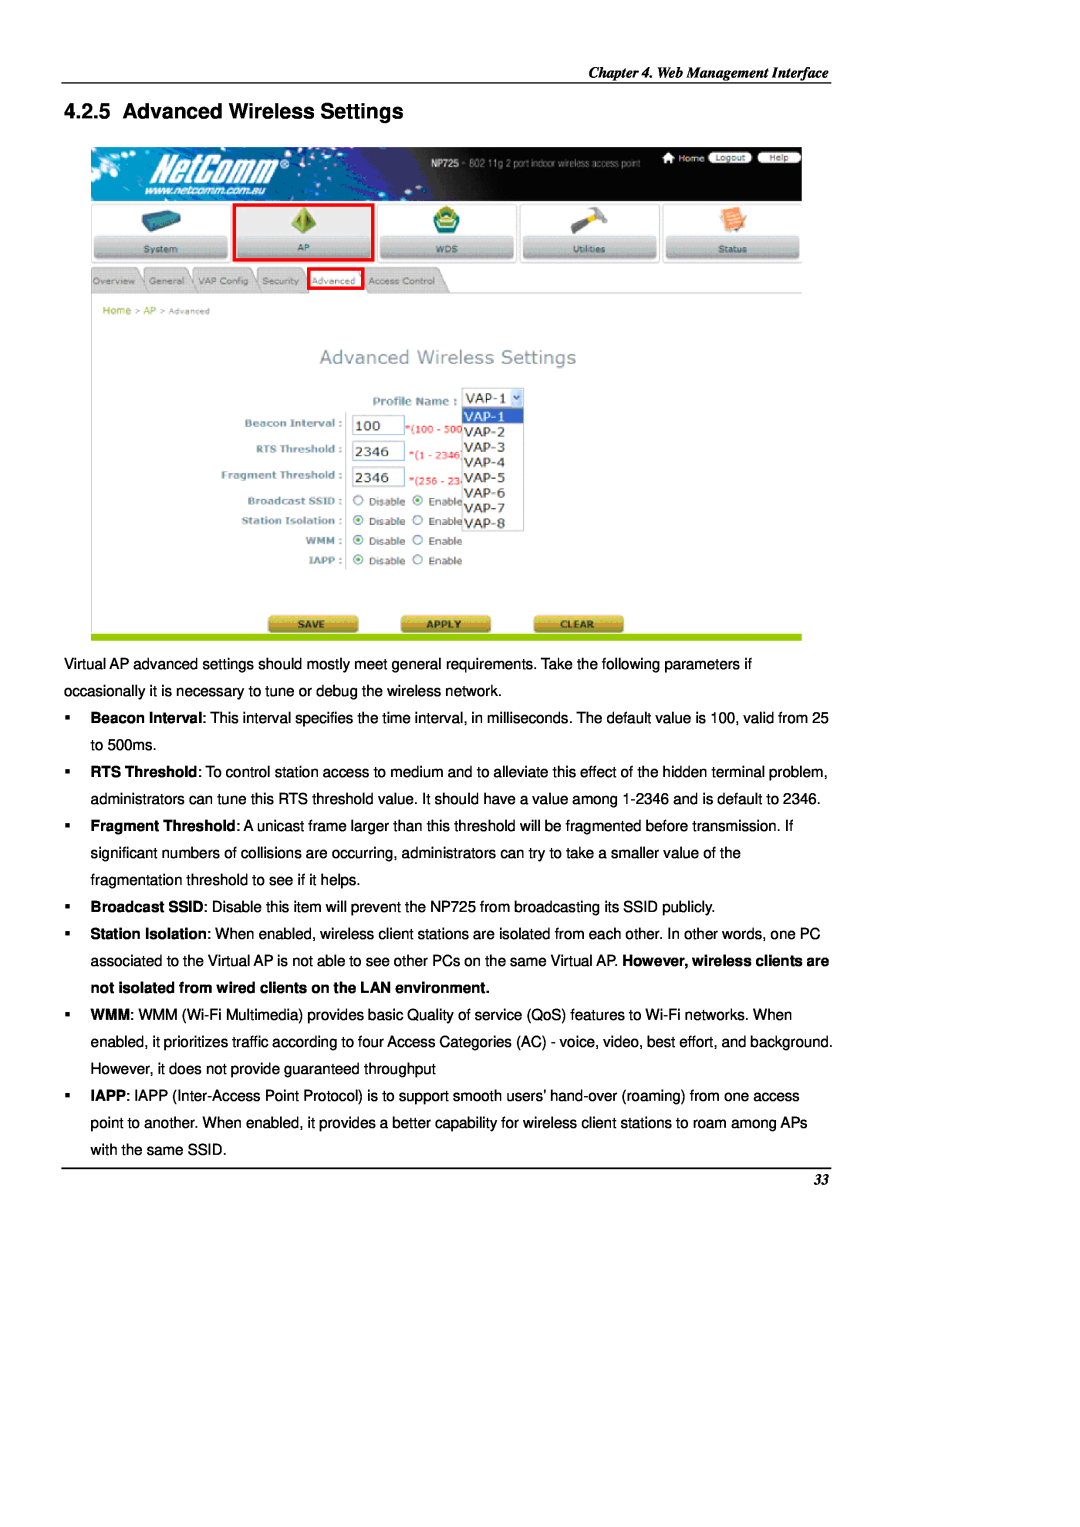 NetComm NP725 manual Advanced Wireless Settings, Web Management Interface 